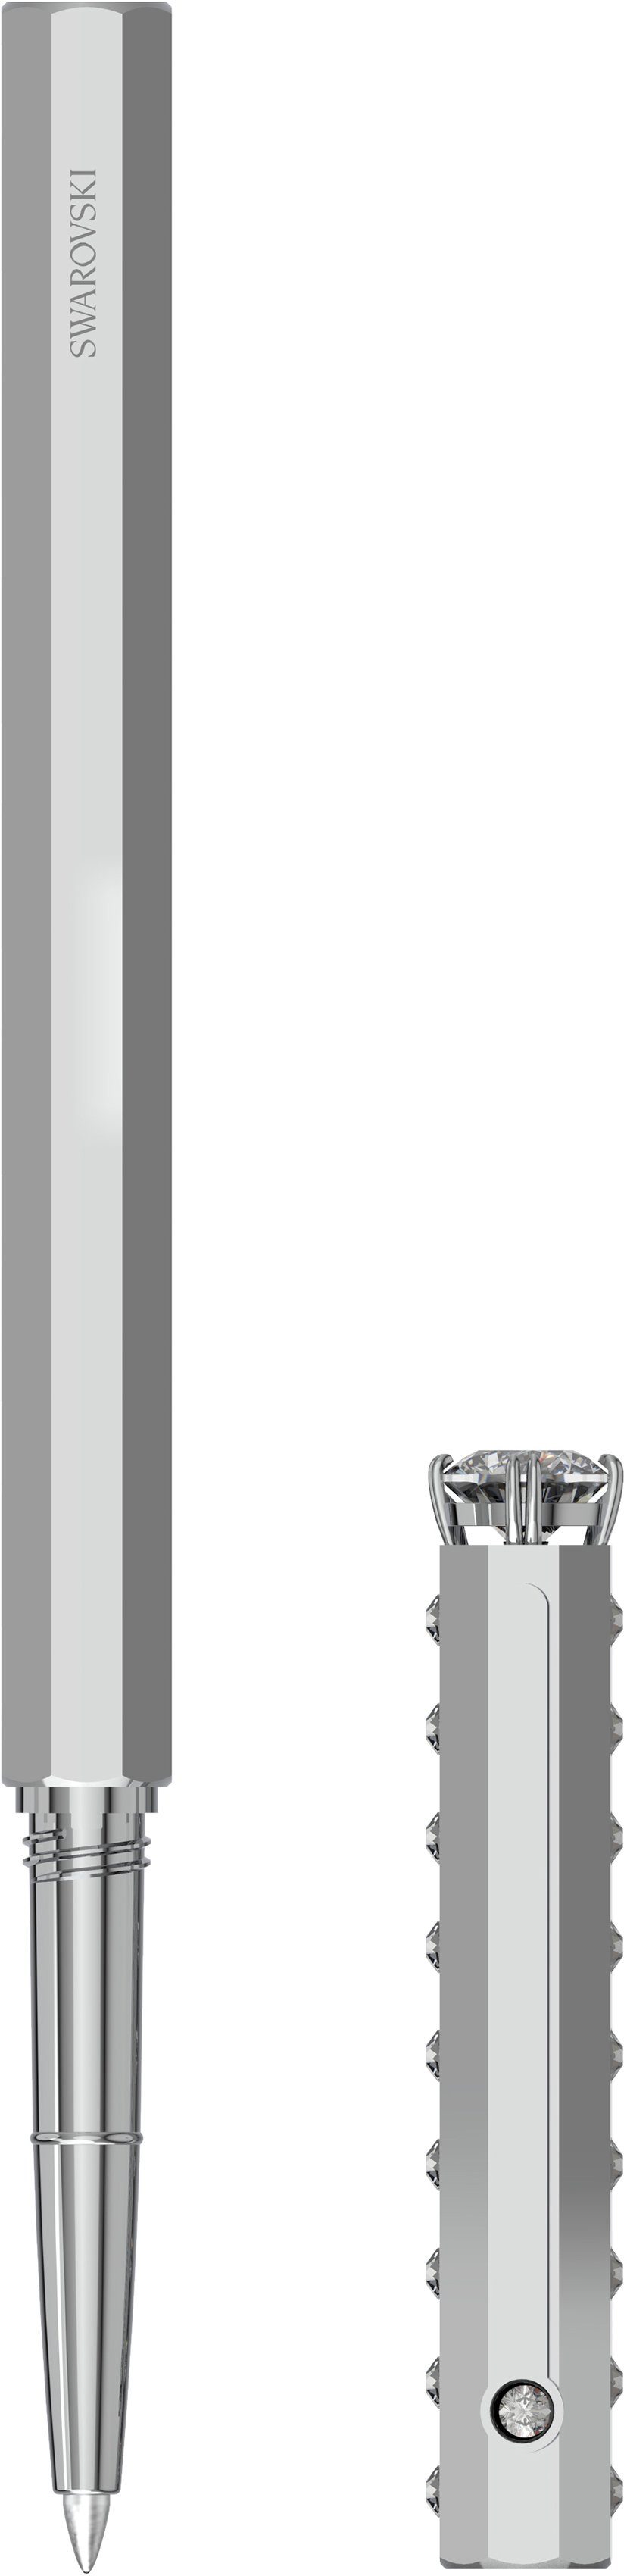 Swarovski Kugelschreiber Klassisch, 5631209, 5627168, Swarovski® 5634417, metallfarben-kristallweiß Kristallen mit 5631210